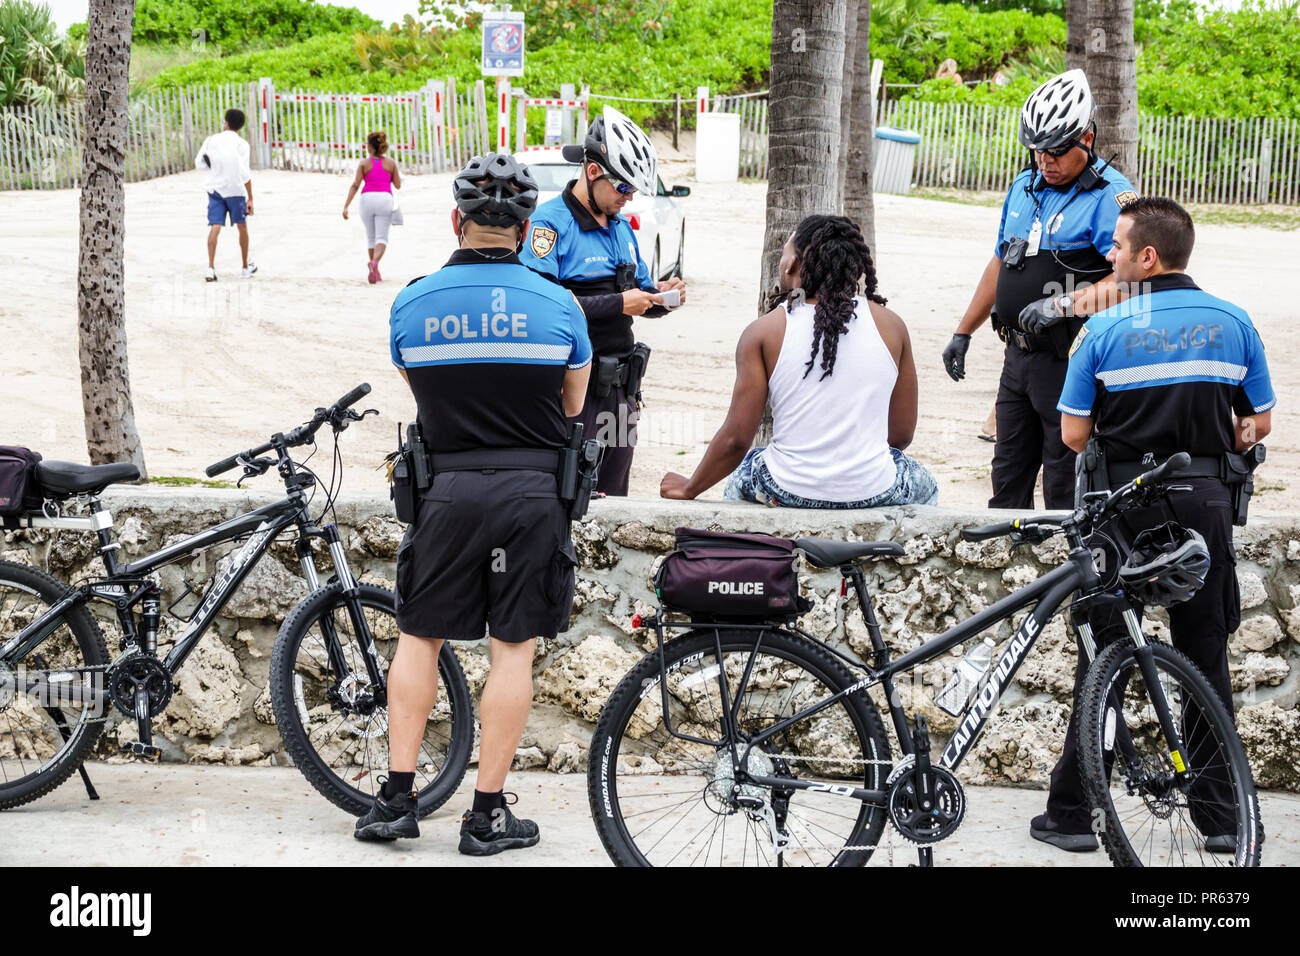 Miami Beach Florida, Fahrrad Fahrräder Radfahren Reiten Radfahrer Fahrrad, Polizei, Offiziere, Befragung, Schwarze Männer männlich, FL18052720 Stockfoto